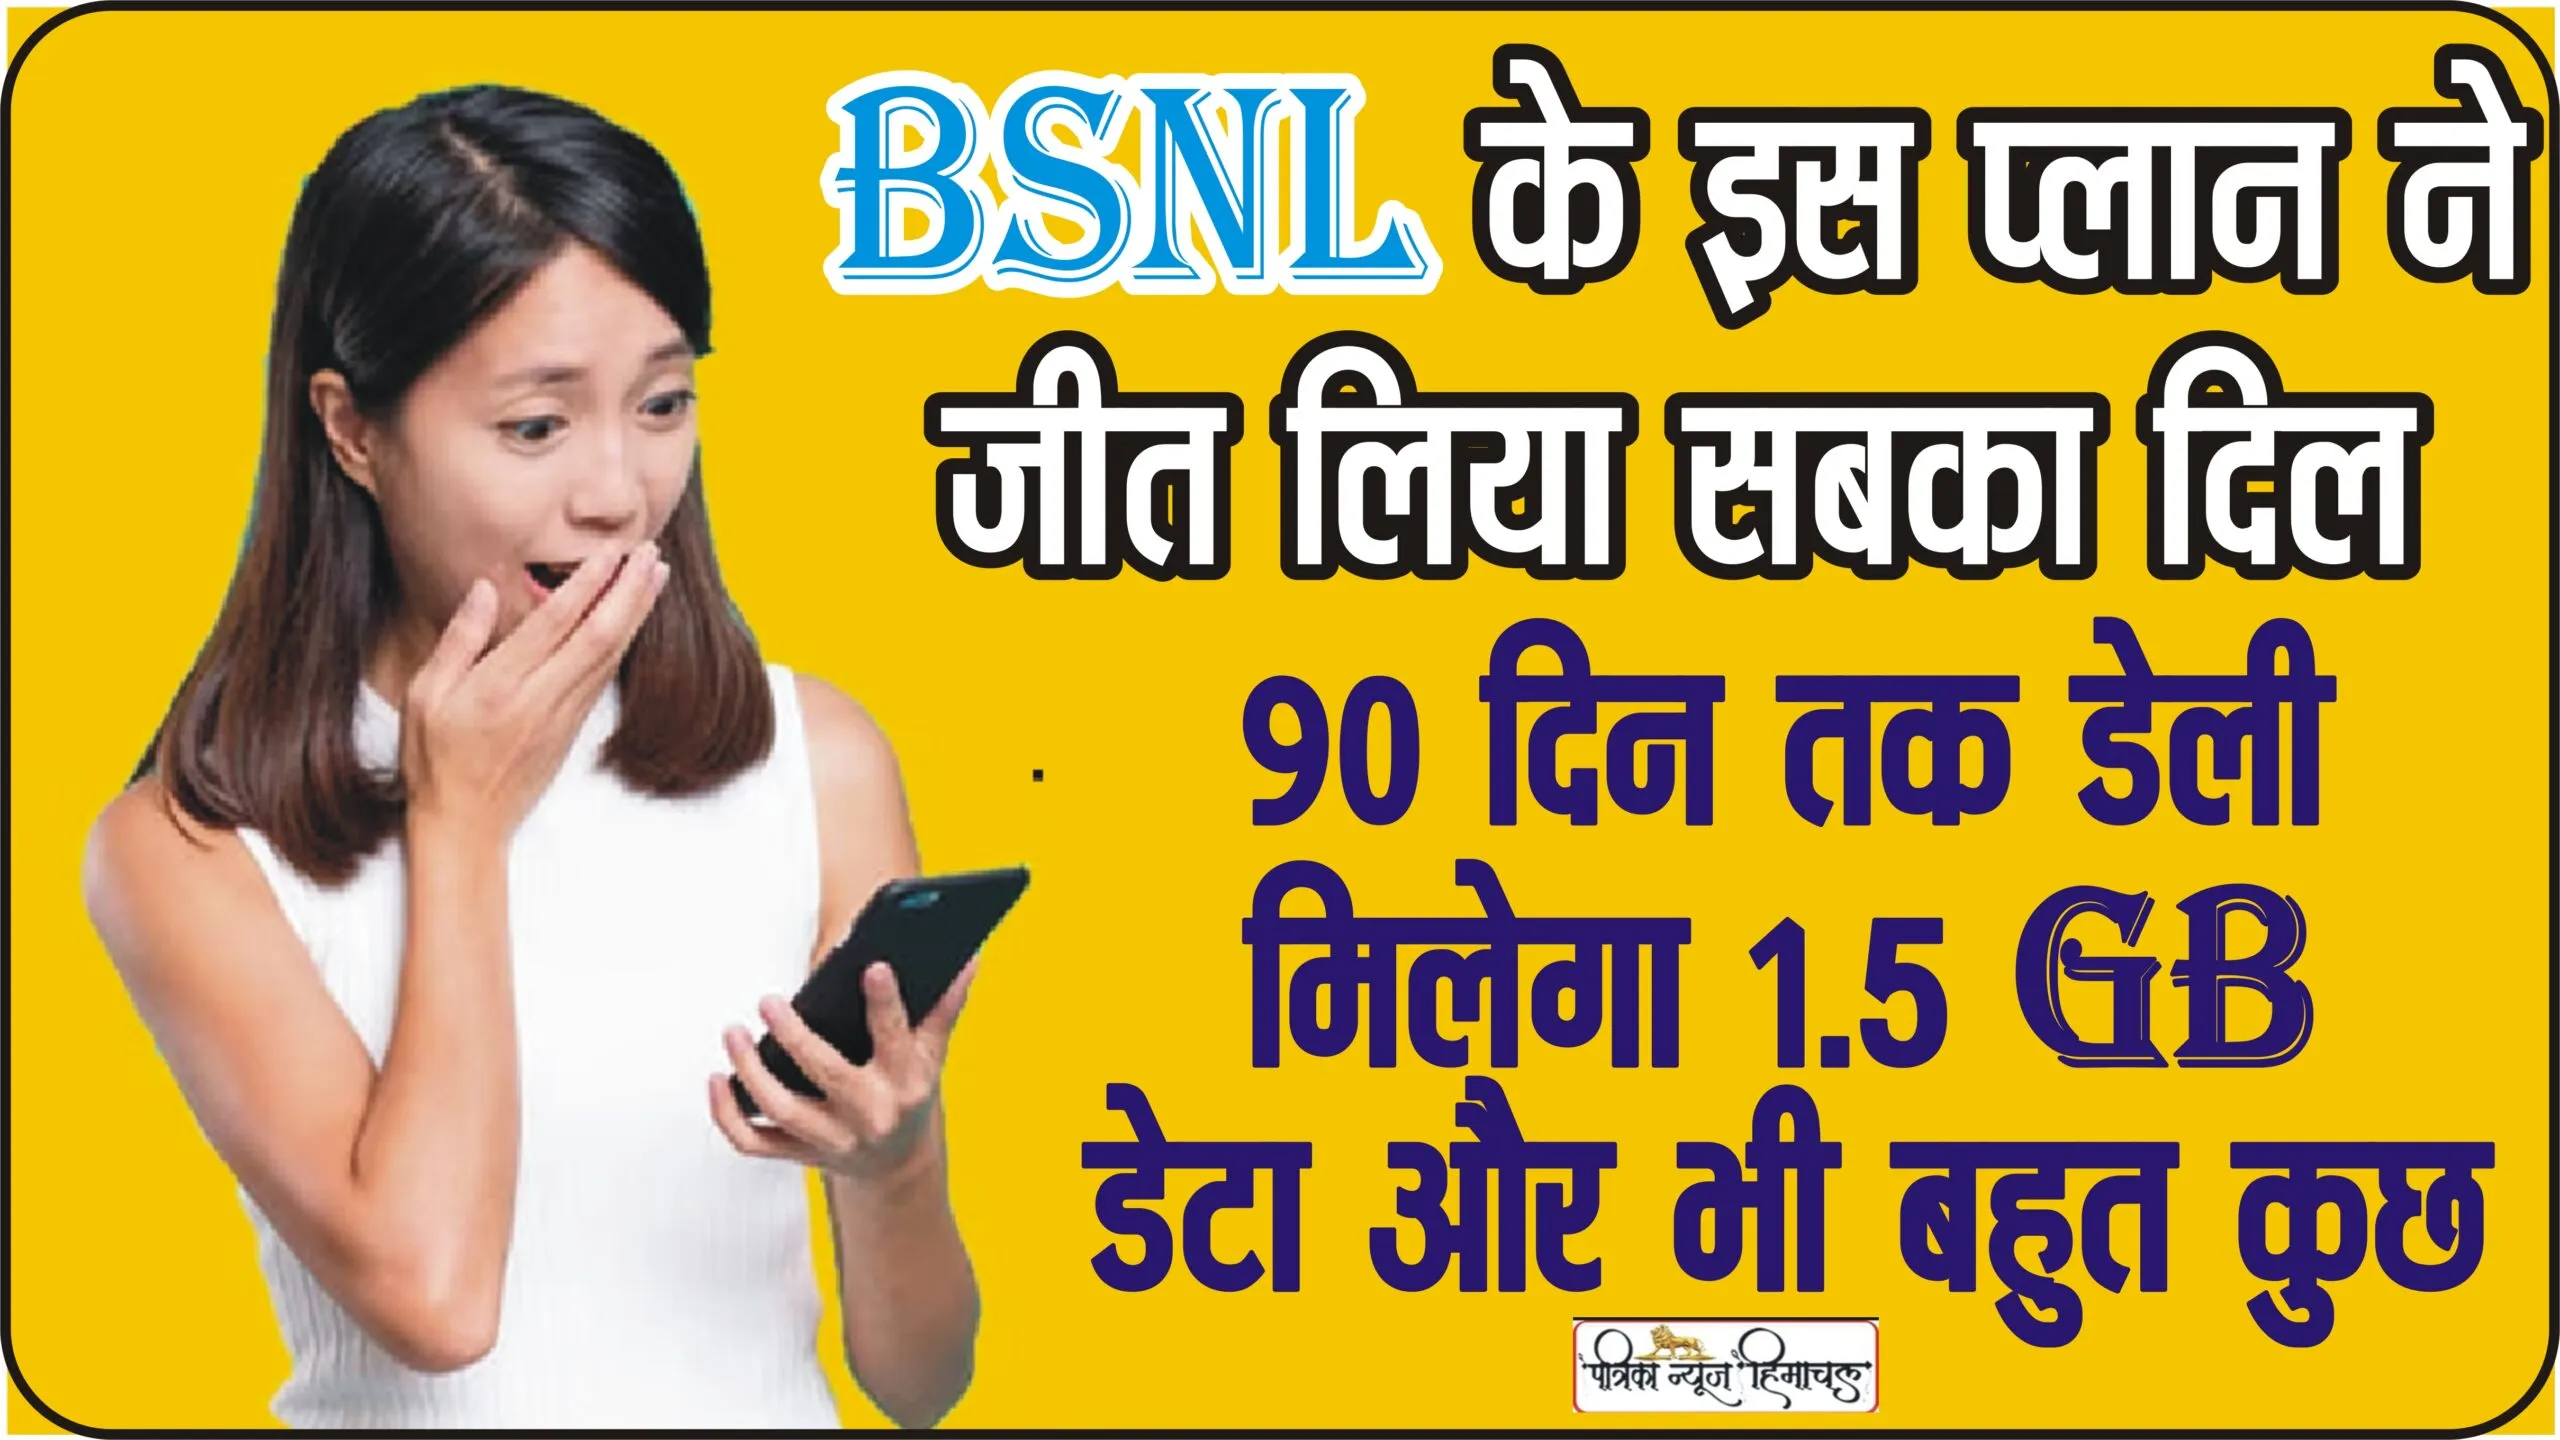 BSNL Recharge Plan || BSNL के इस प्लान ने जीत लिया सबका दिल, 90 दिन तक डेली मिलेगा 1.5 GB डेटा और भी बहुत कुछ